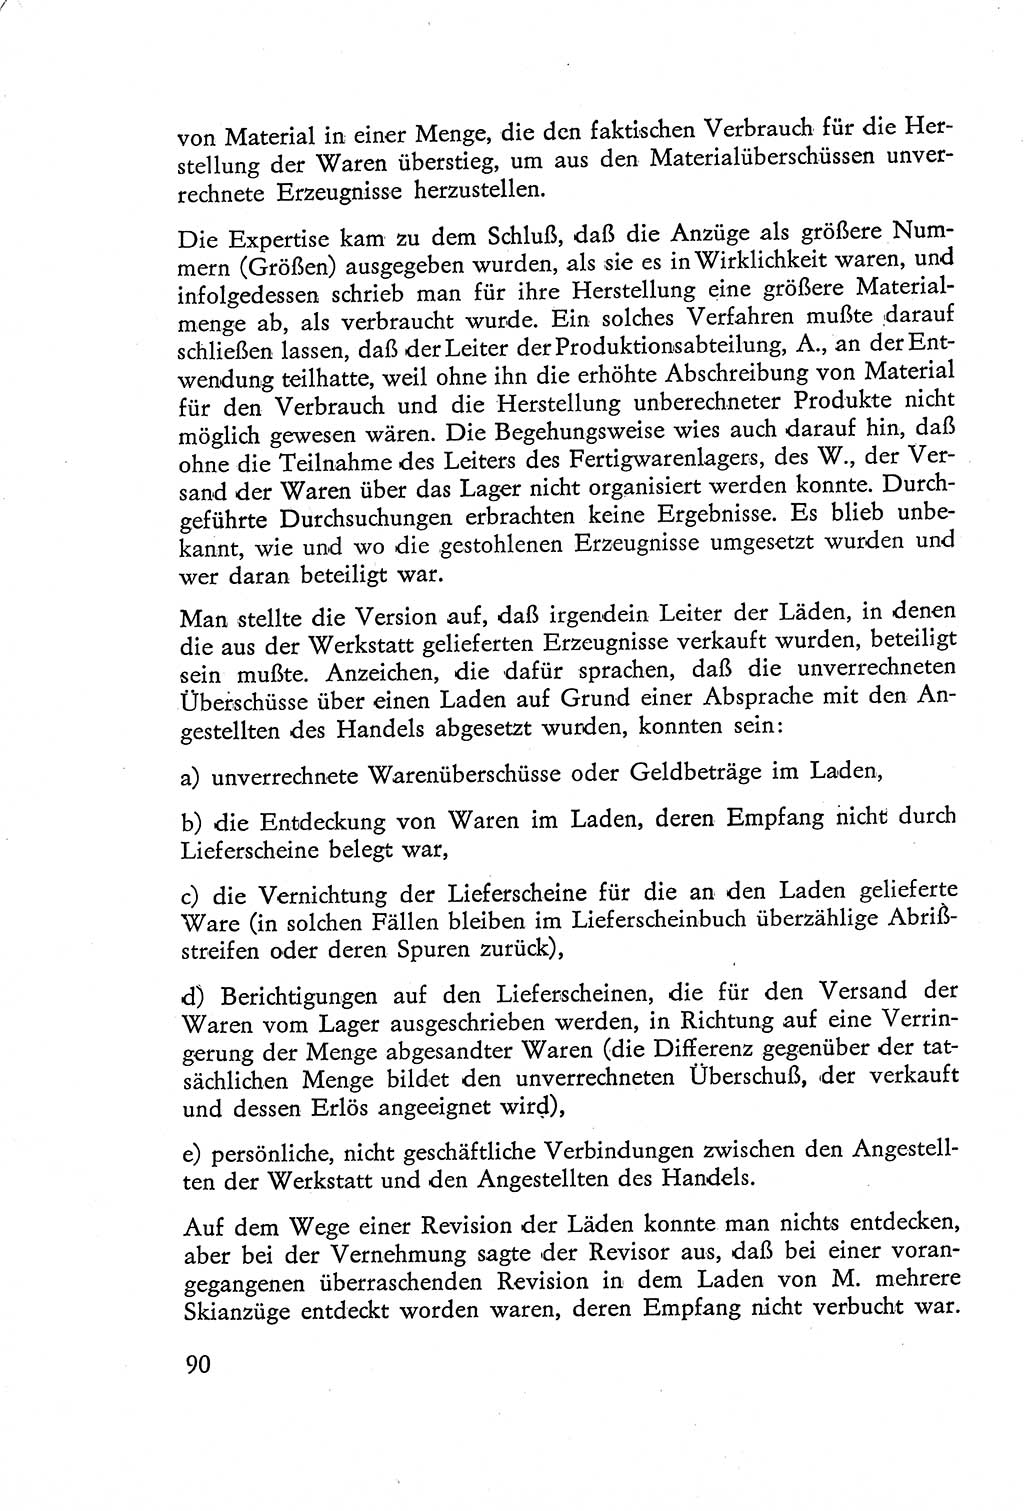 Die Untersuchung einzelner Verbrechensarten [Deutsche Demokratische Republik (DDR)] 1960, Seite 90 (Unters. Verbr.-Art. DDR 1960, S. 90)